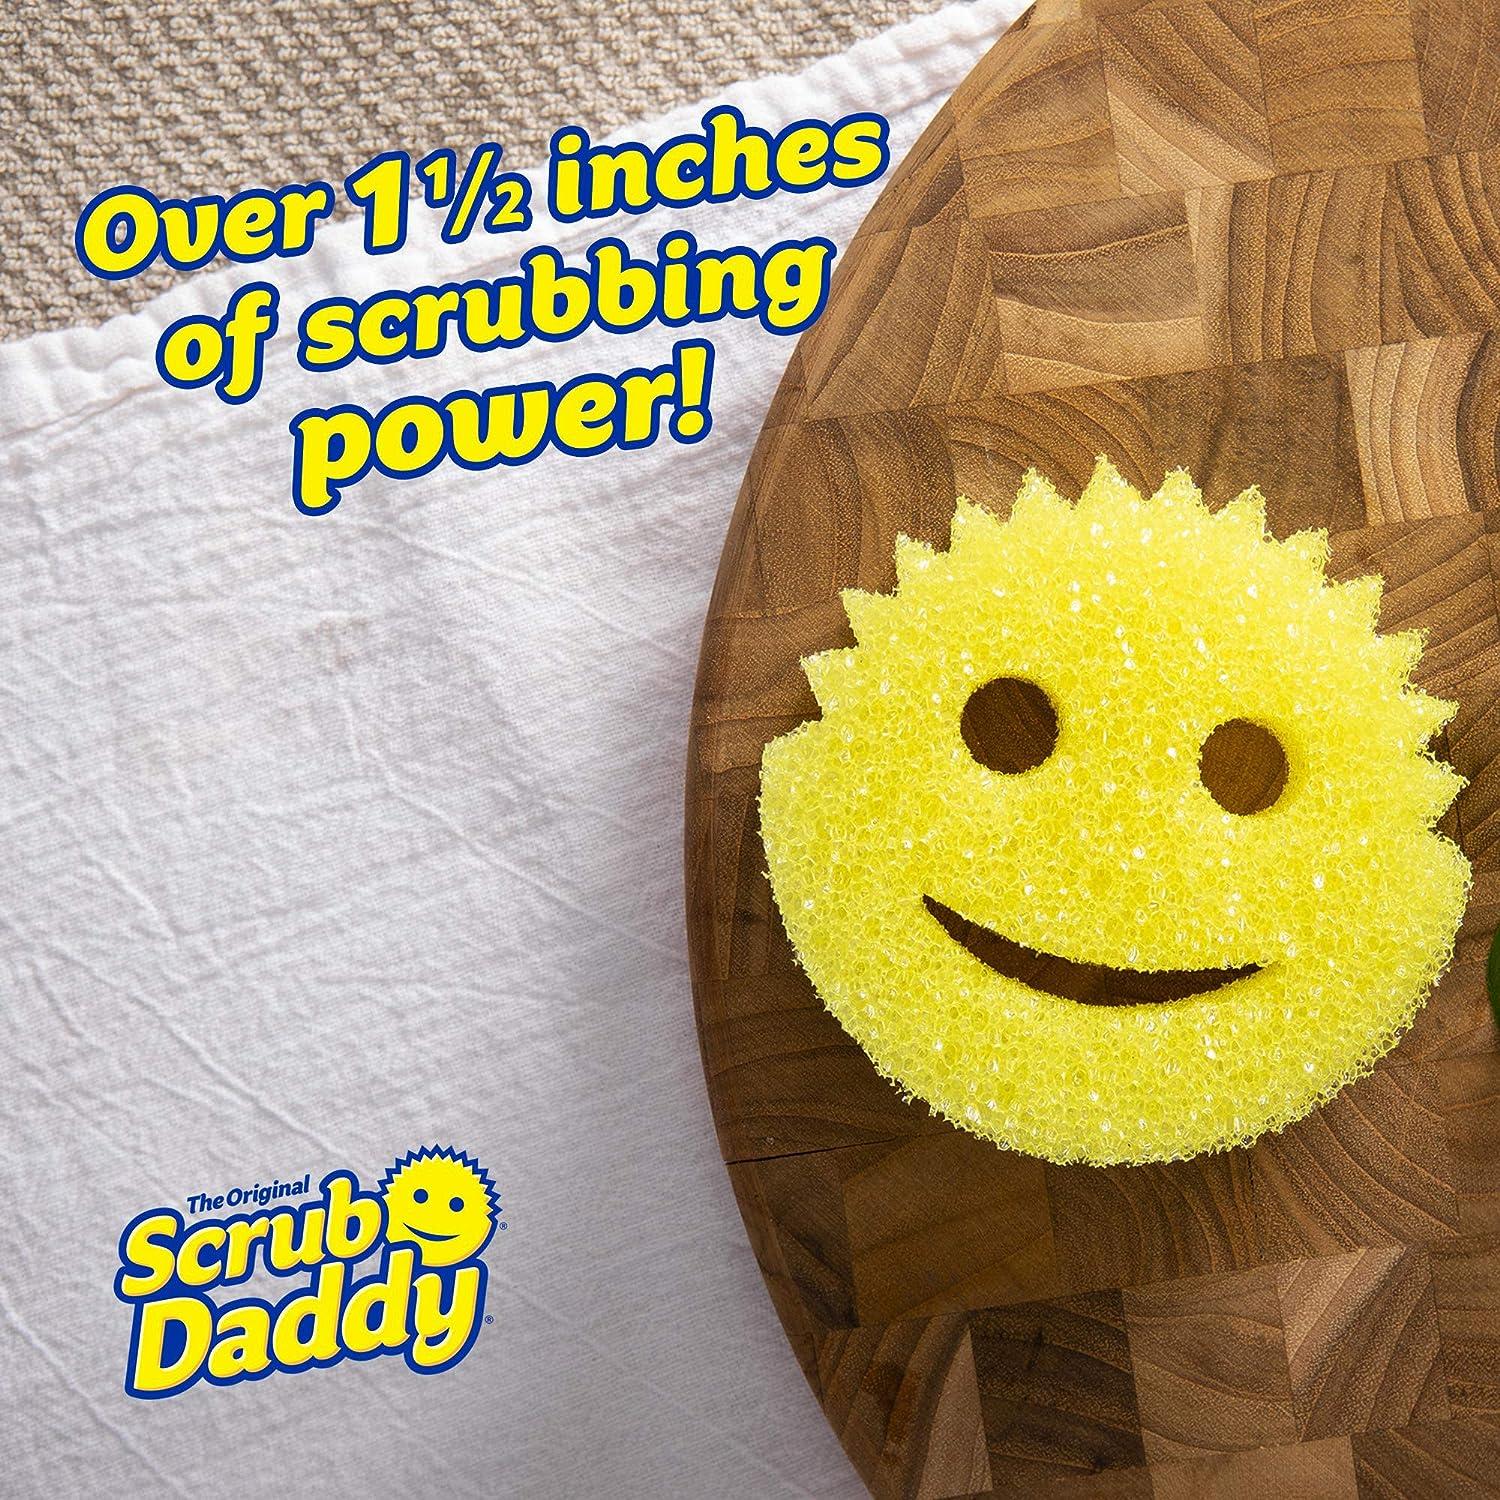 Scrub Daddy Original – Scrub Daddy